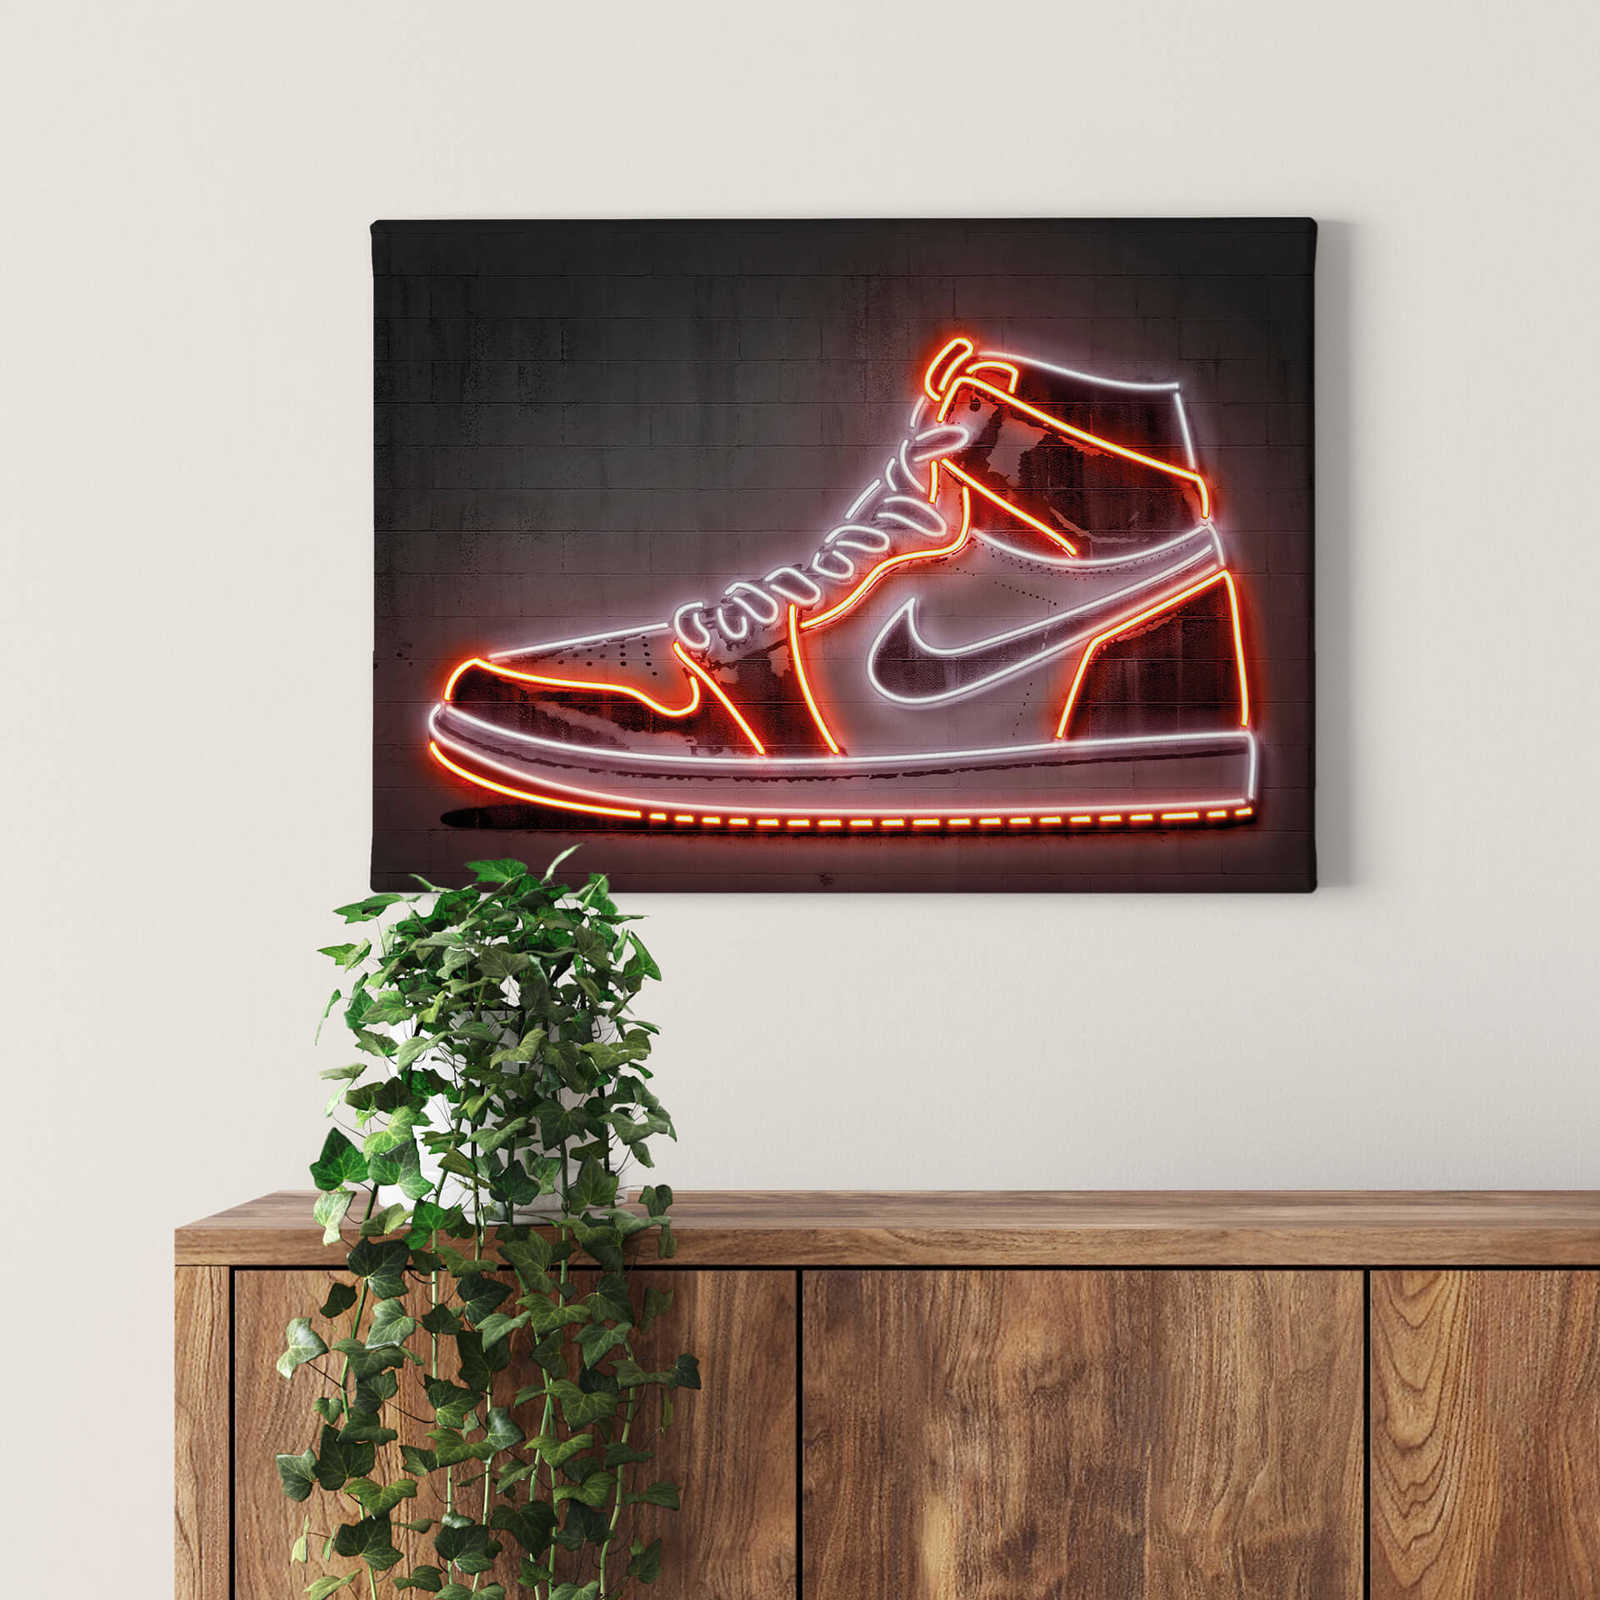             Leinwandbild Neonschild "Sneaker" von Mielu – 0,70 m x 0,50 m
        